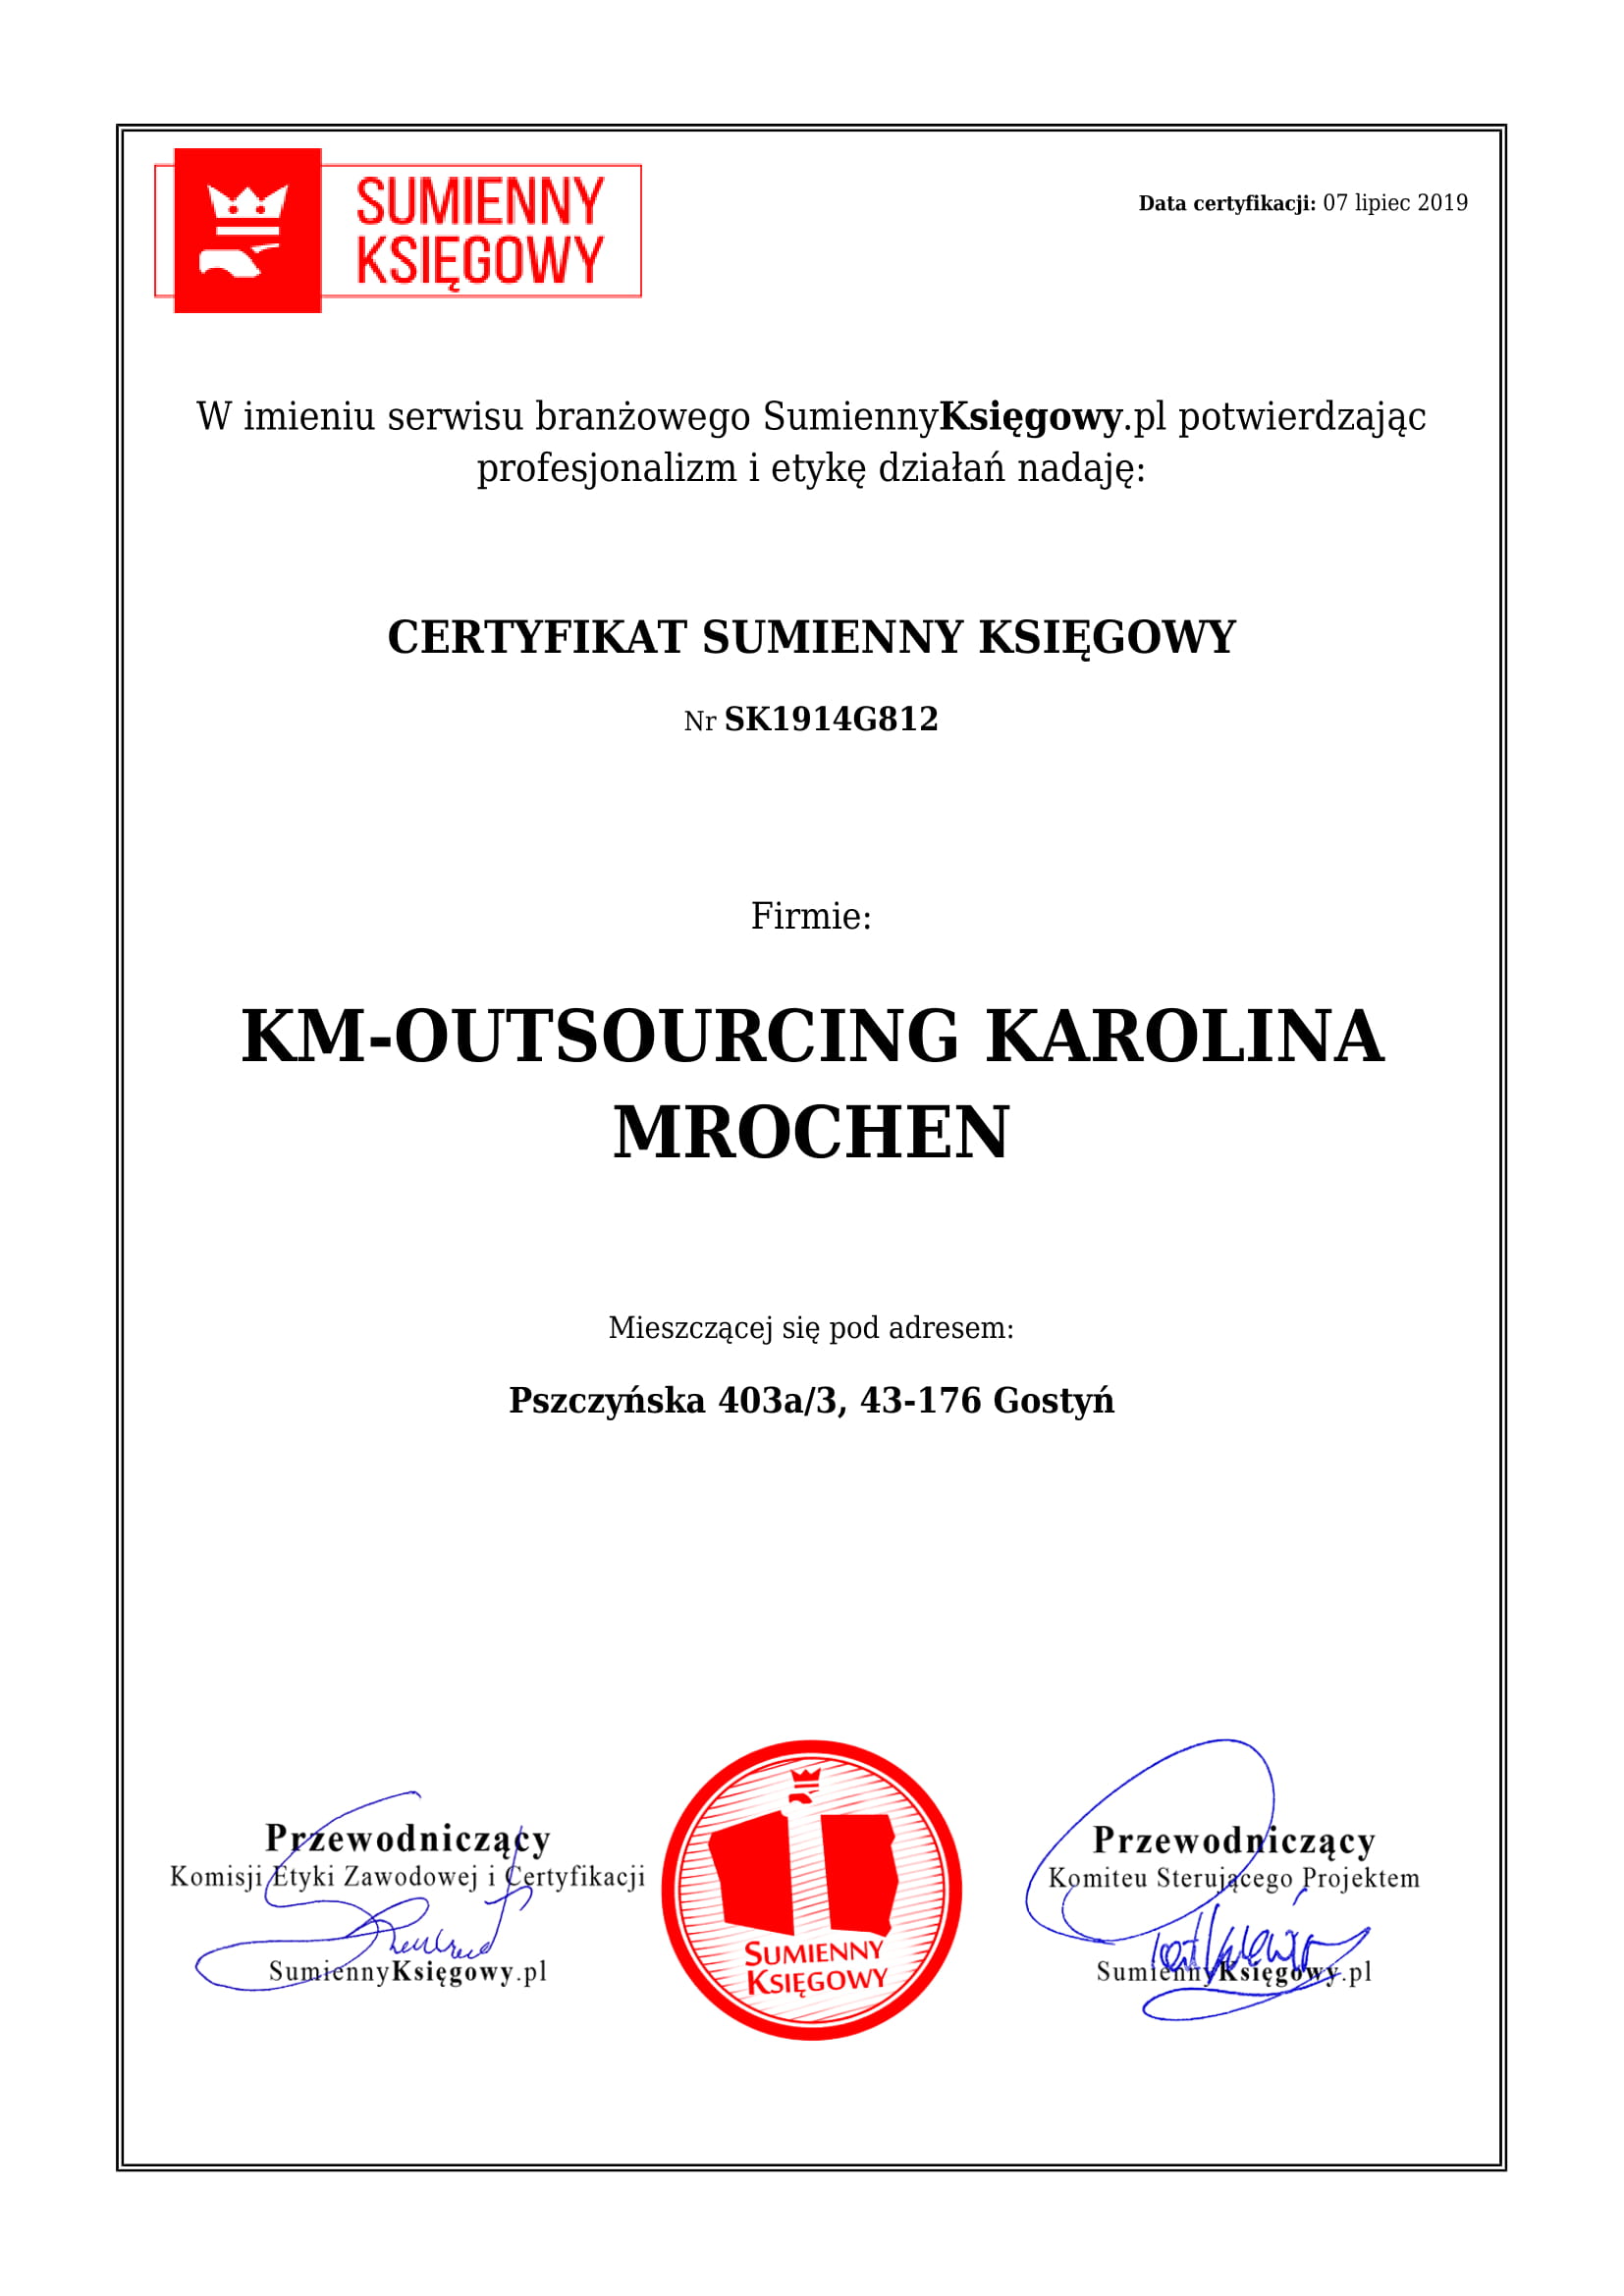 KM-OUTSOURCING KAROLINA MROCHEN certyfikat 1